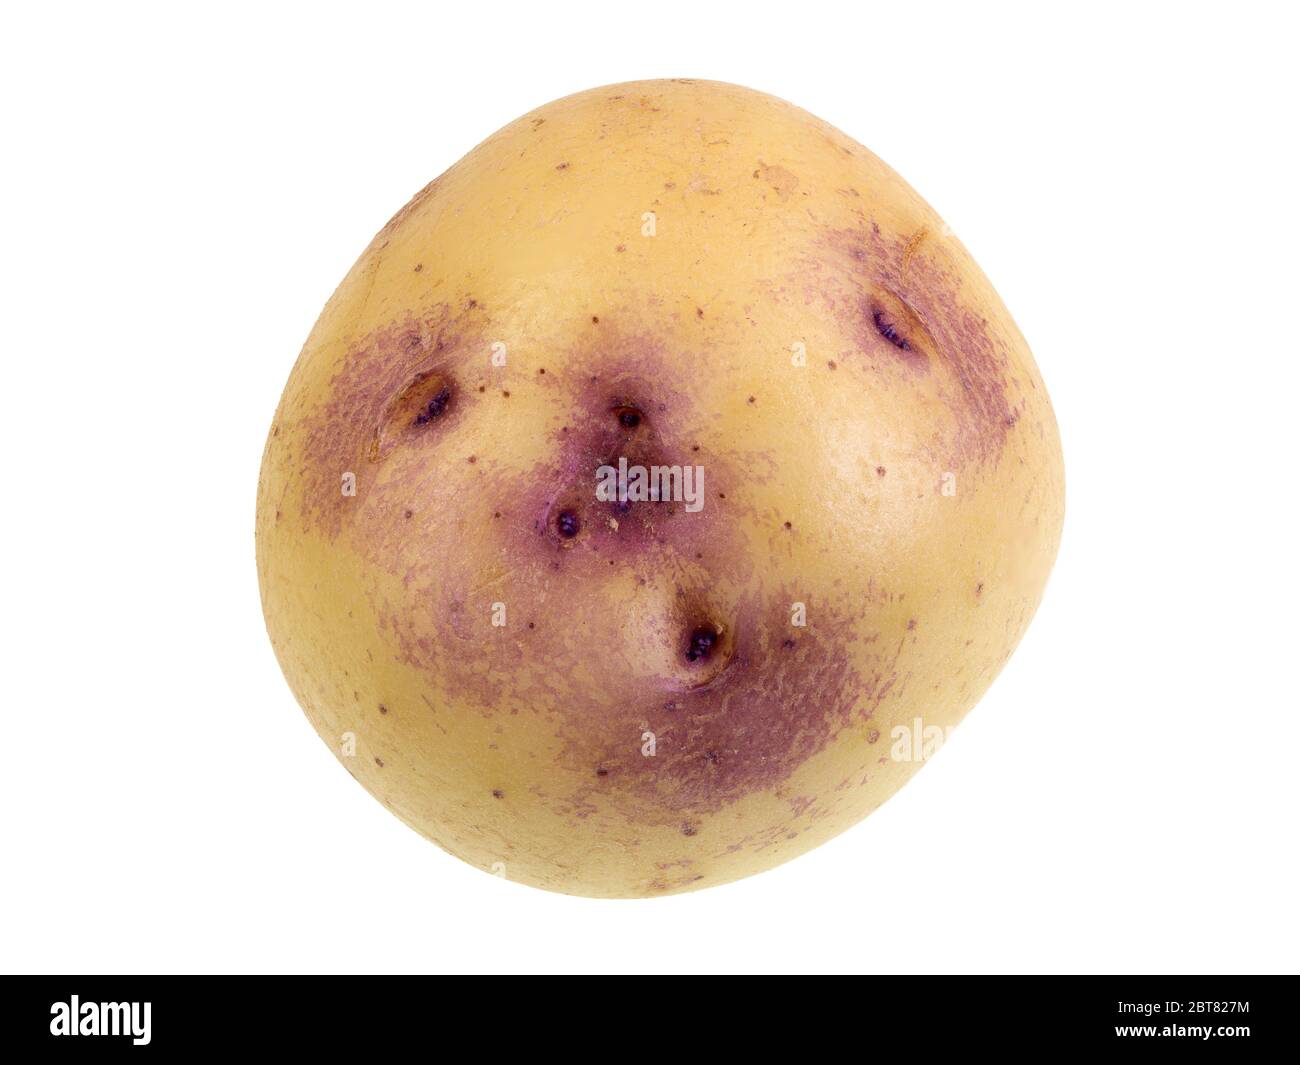 Moderne Kartoffel-Sorte namens Kestrel und bekannt für ihre einzigartige  lila Errötung um die flachen Augen Stockfotografie - Alamy